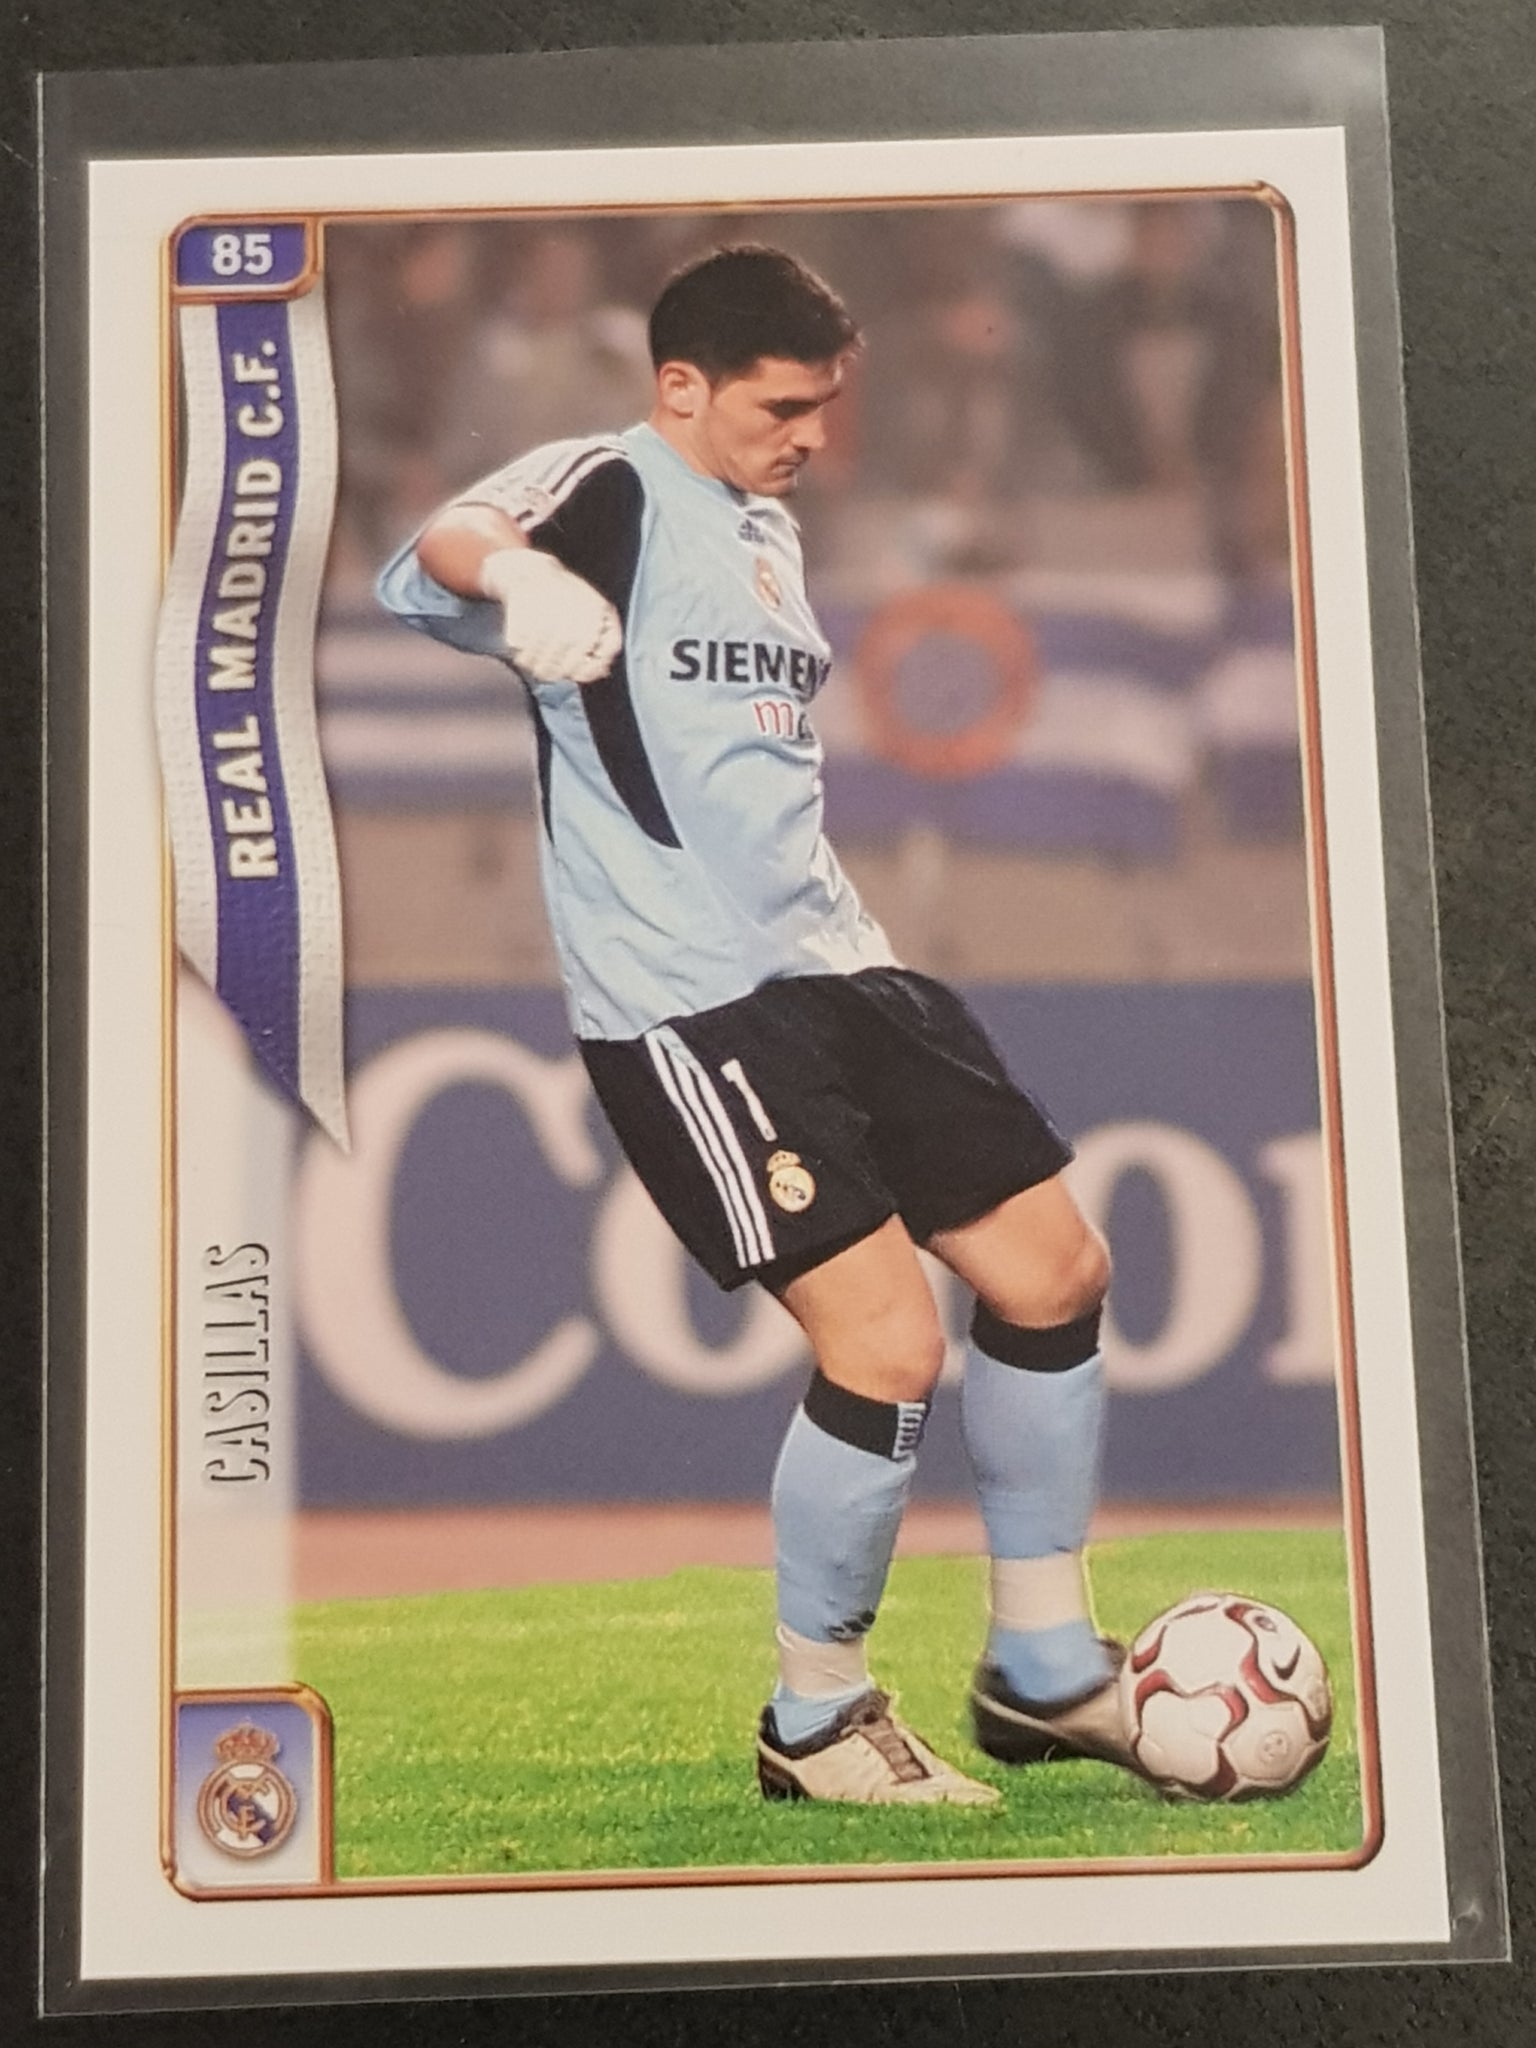 2005 Las Fichas de La Liga Mundicromo Iker Casillas #85 Trading Card